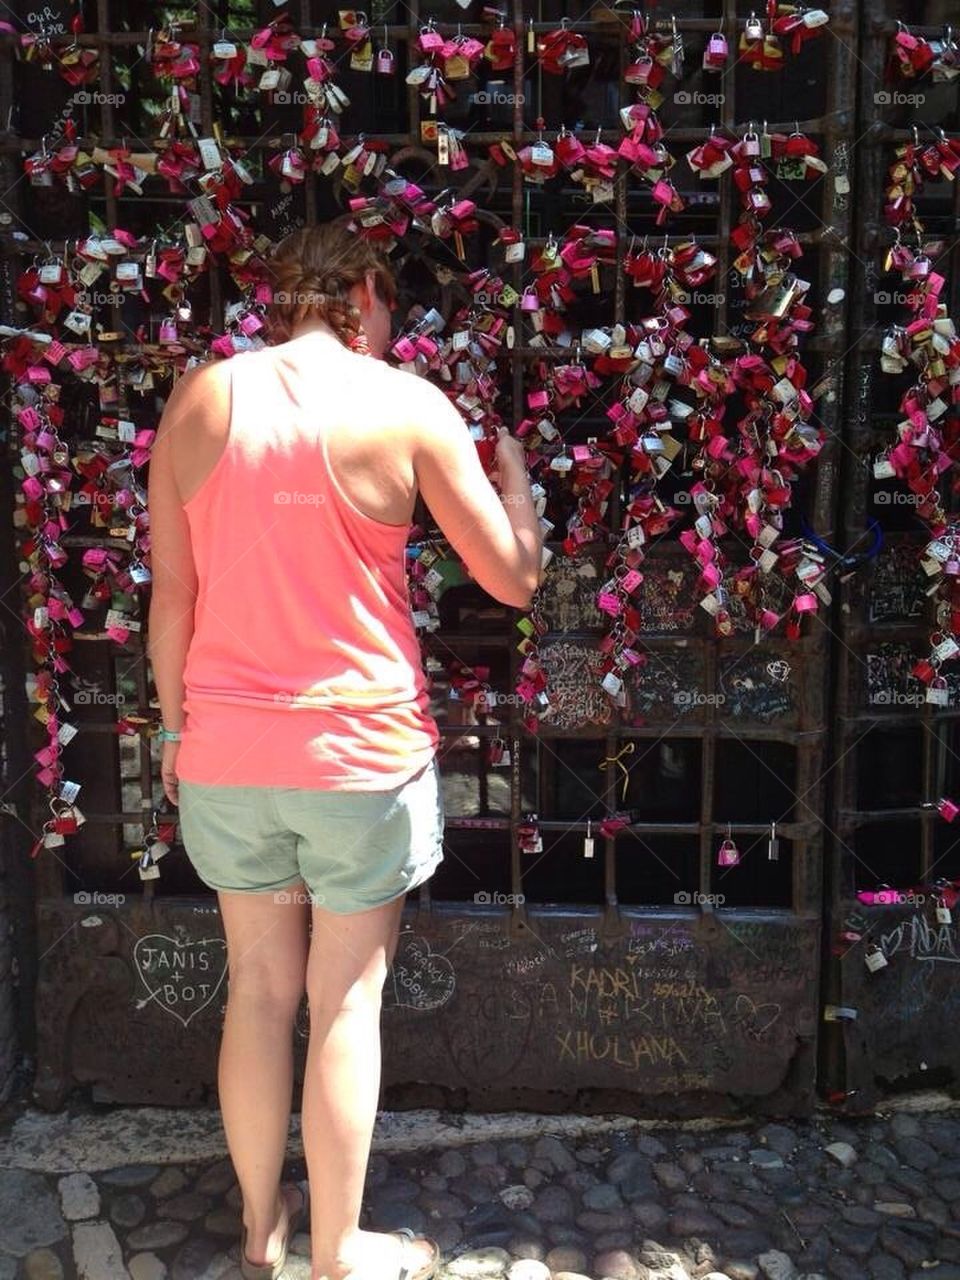 Romantic Locks at the Romeo and Juliet Balcony